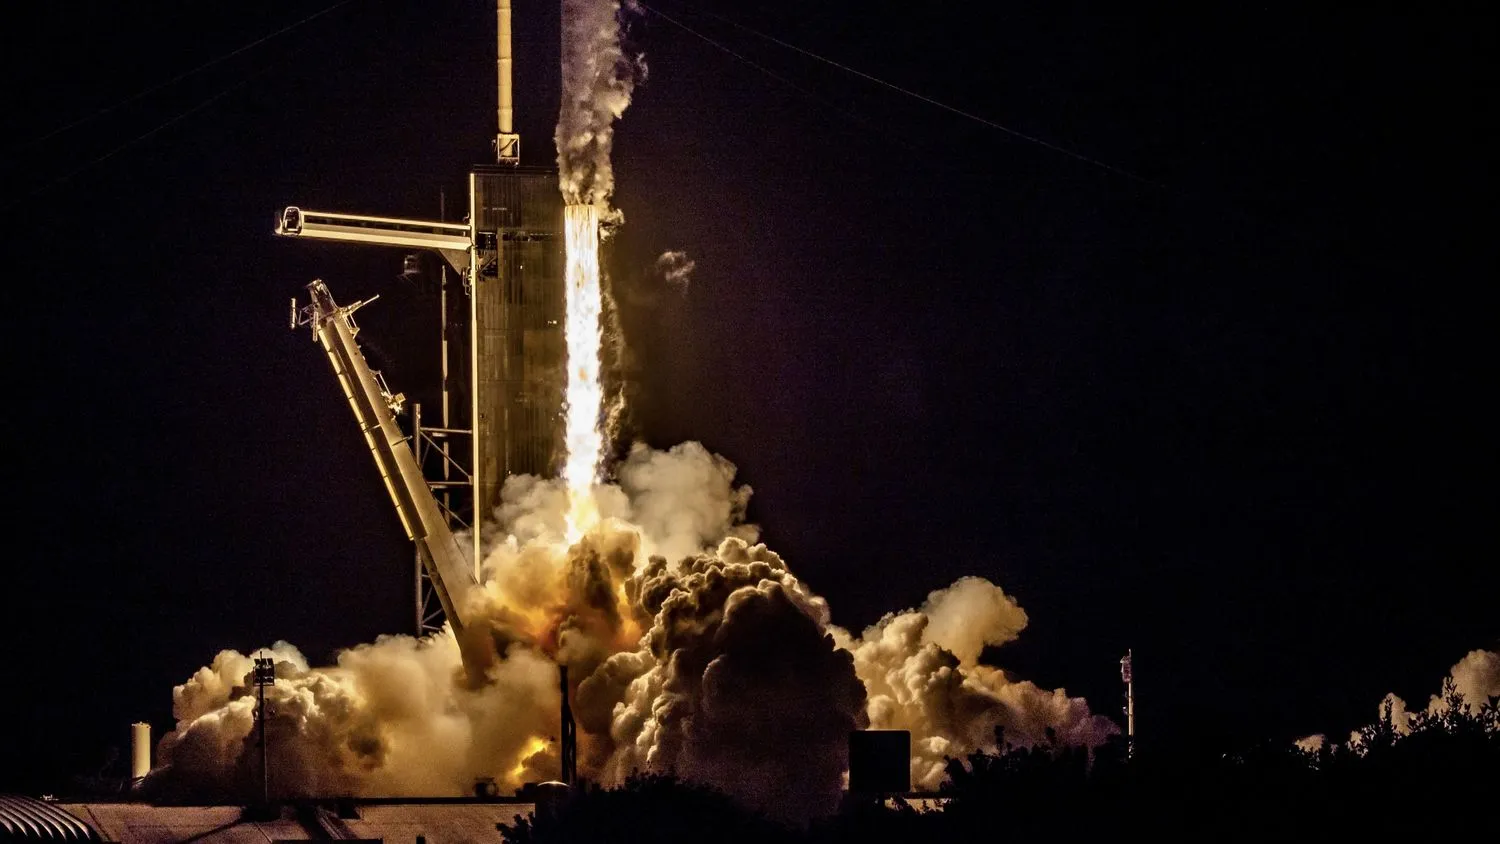 In der Dunkelheit der Nacht schießt eine Rakete aus ihren Triebwerken und schickt Rauchfahnen in die Luft, während sie den Startturm aus dem Bild klettert.